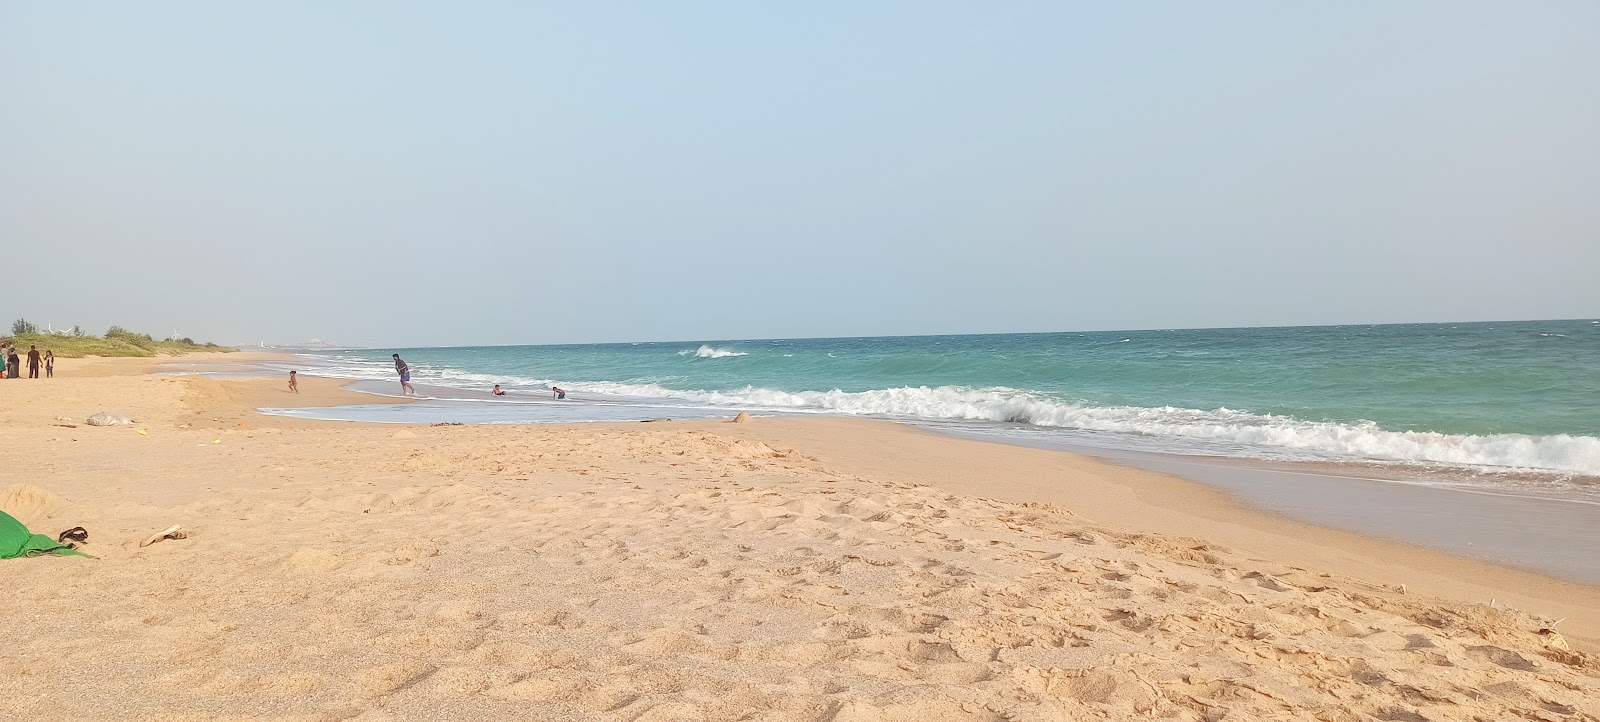 Foto von Chettikulam Beach mit heller sand Oberfläche